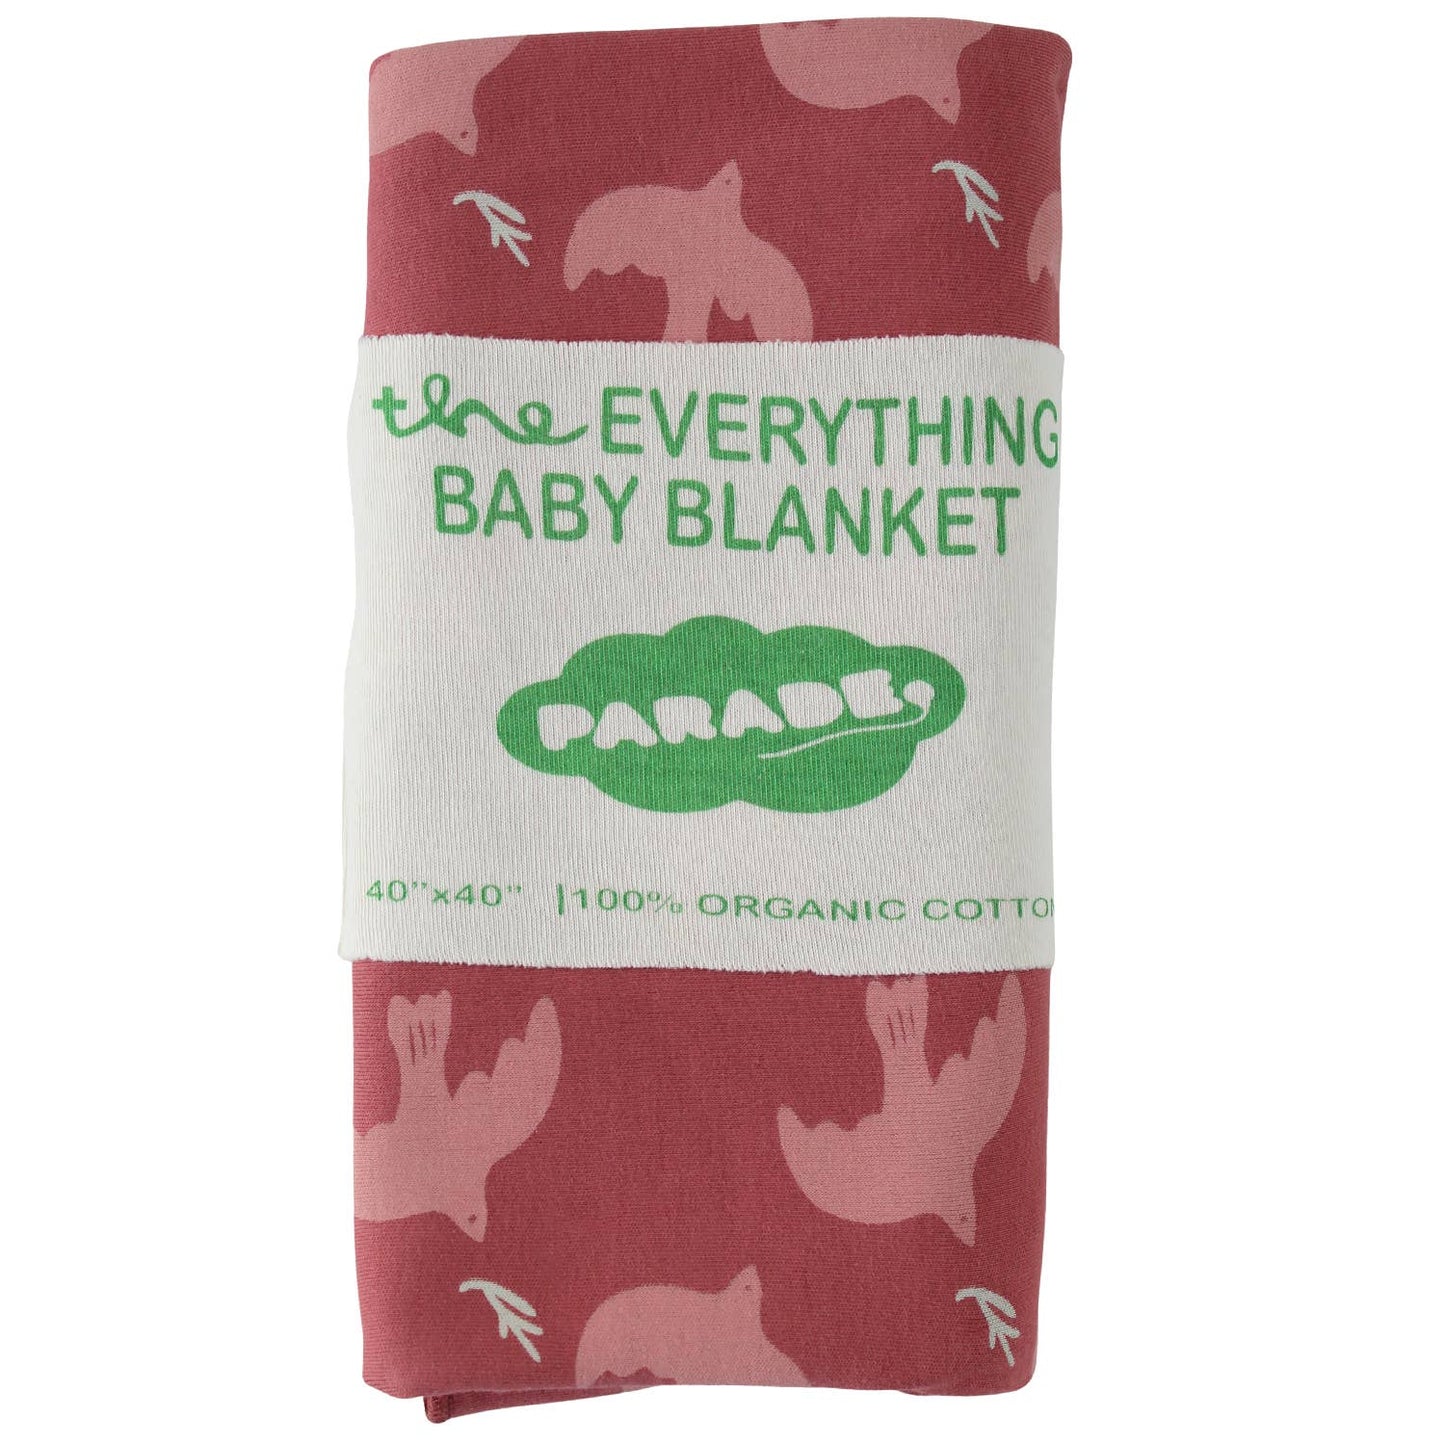 Parade Organics - Everything Blanket